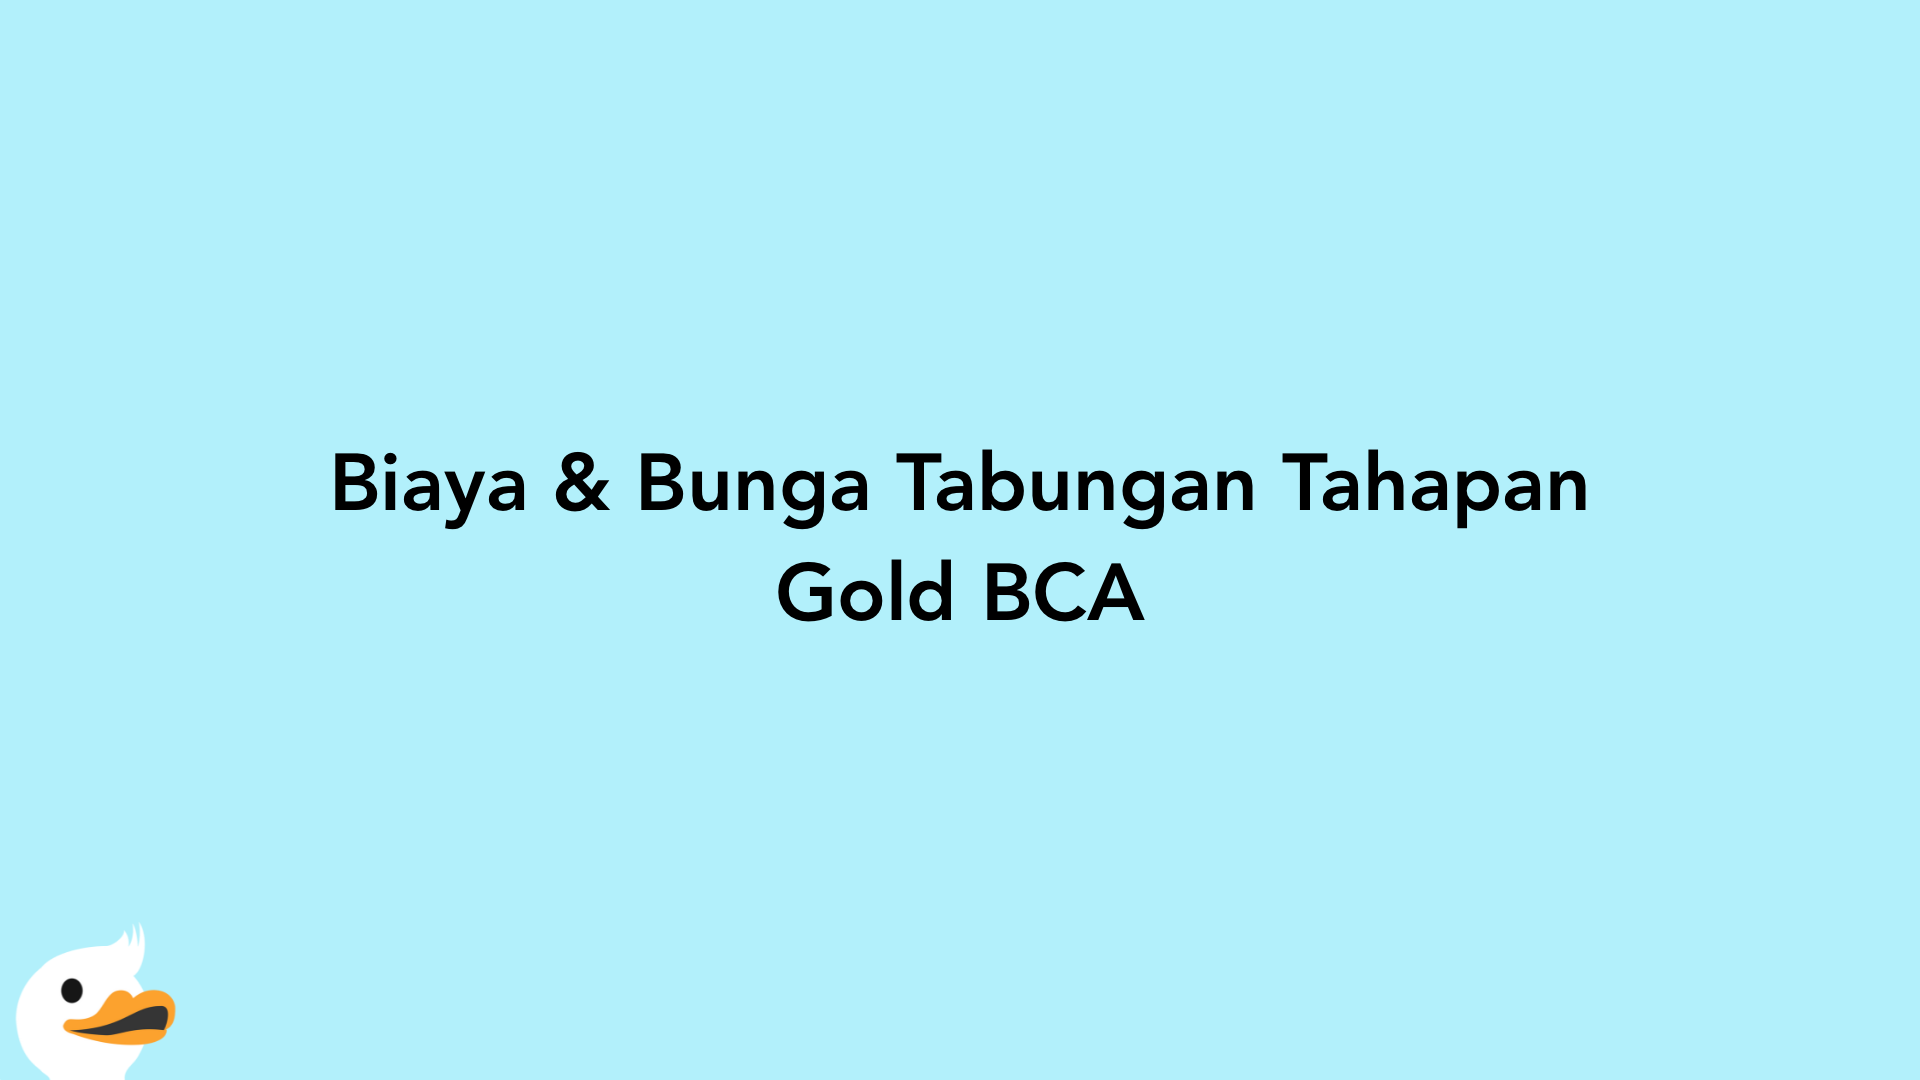 Biaya & Bunga Tabungan Tahapan Gold BCA